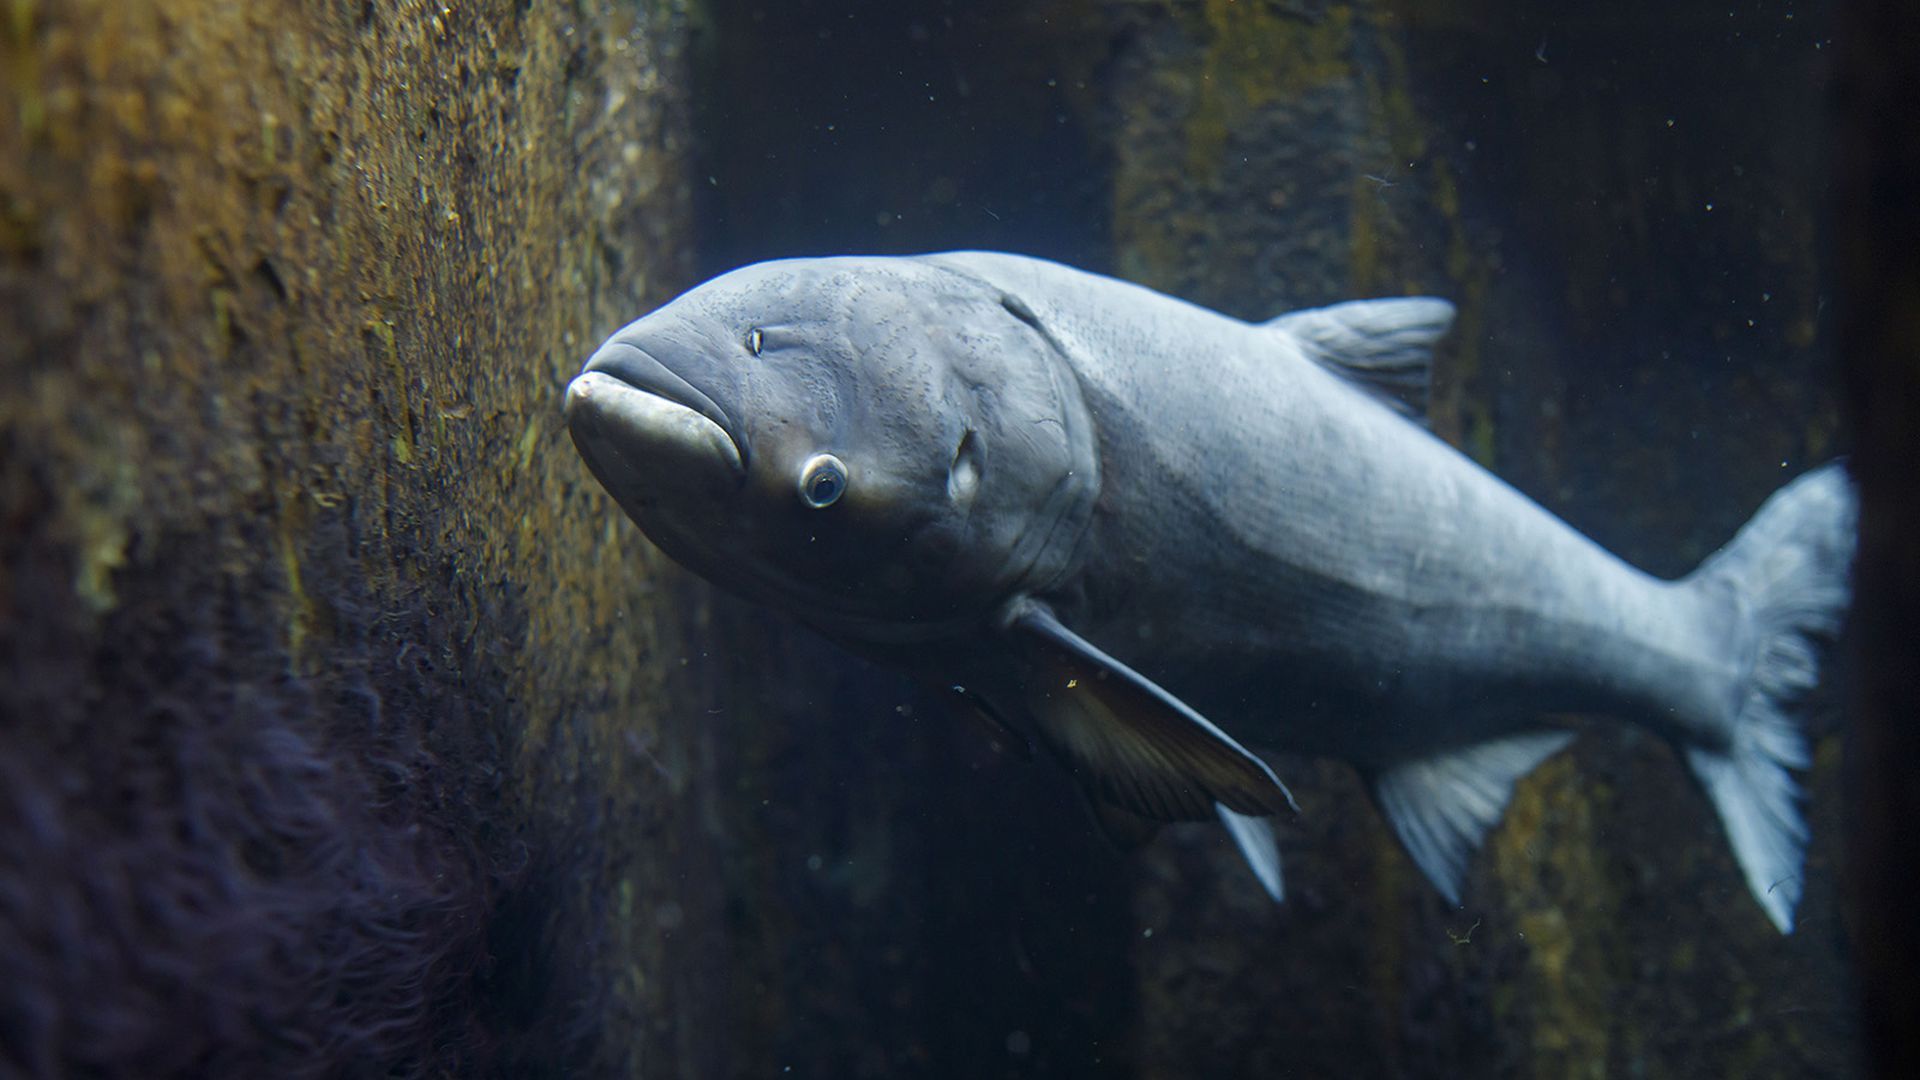 A bighead carp at the Shedd Aquarium.